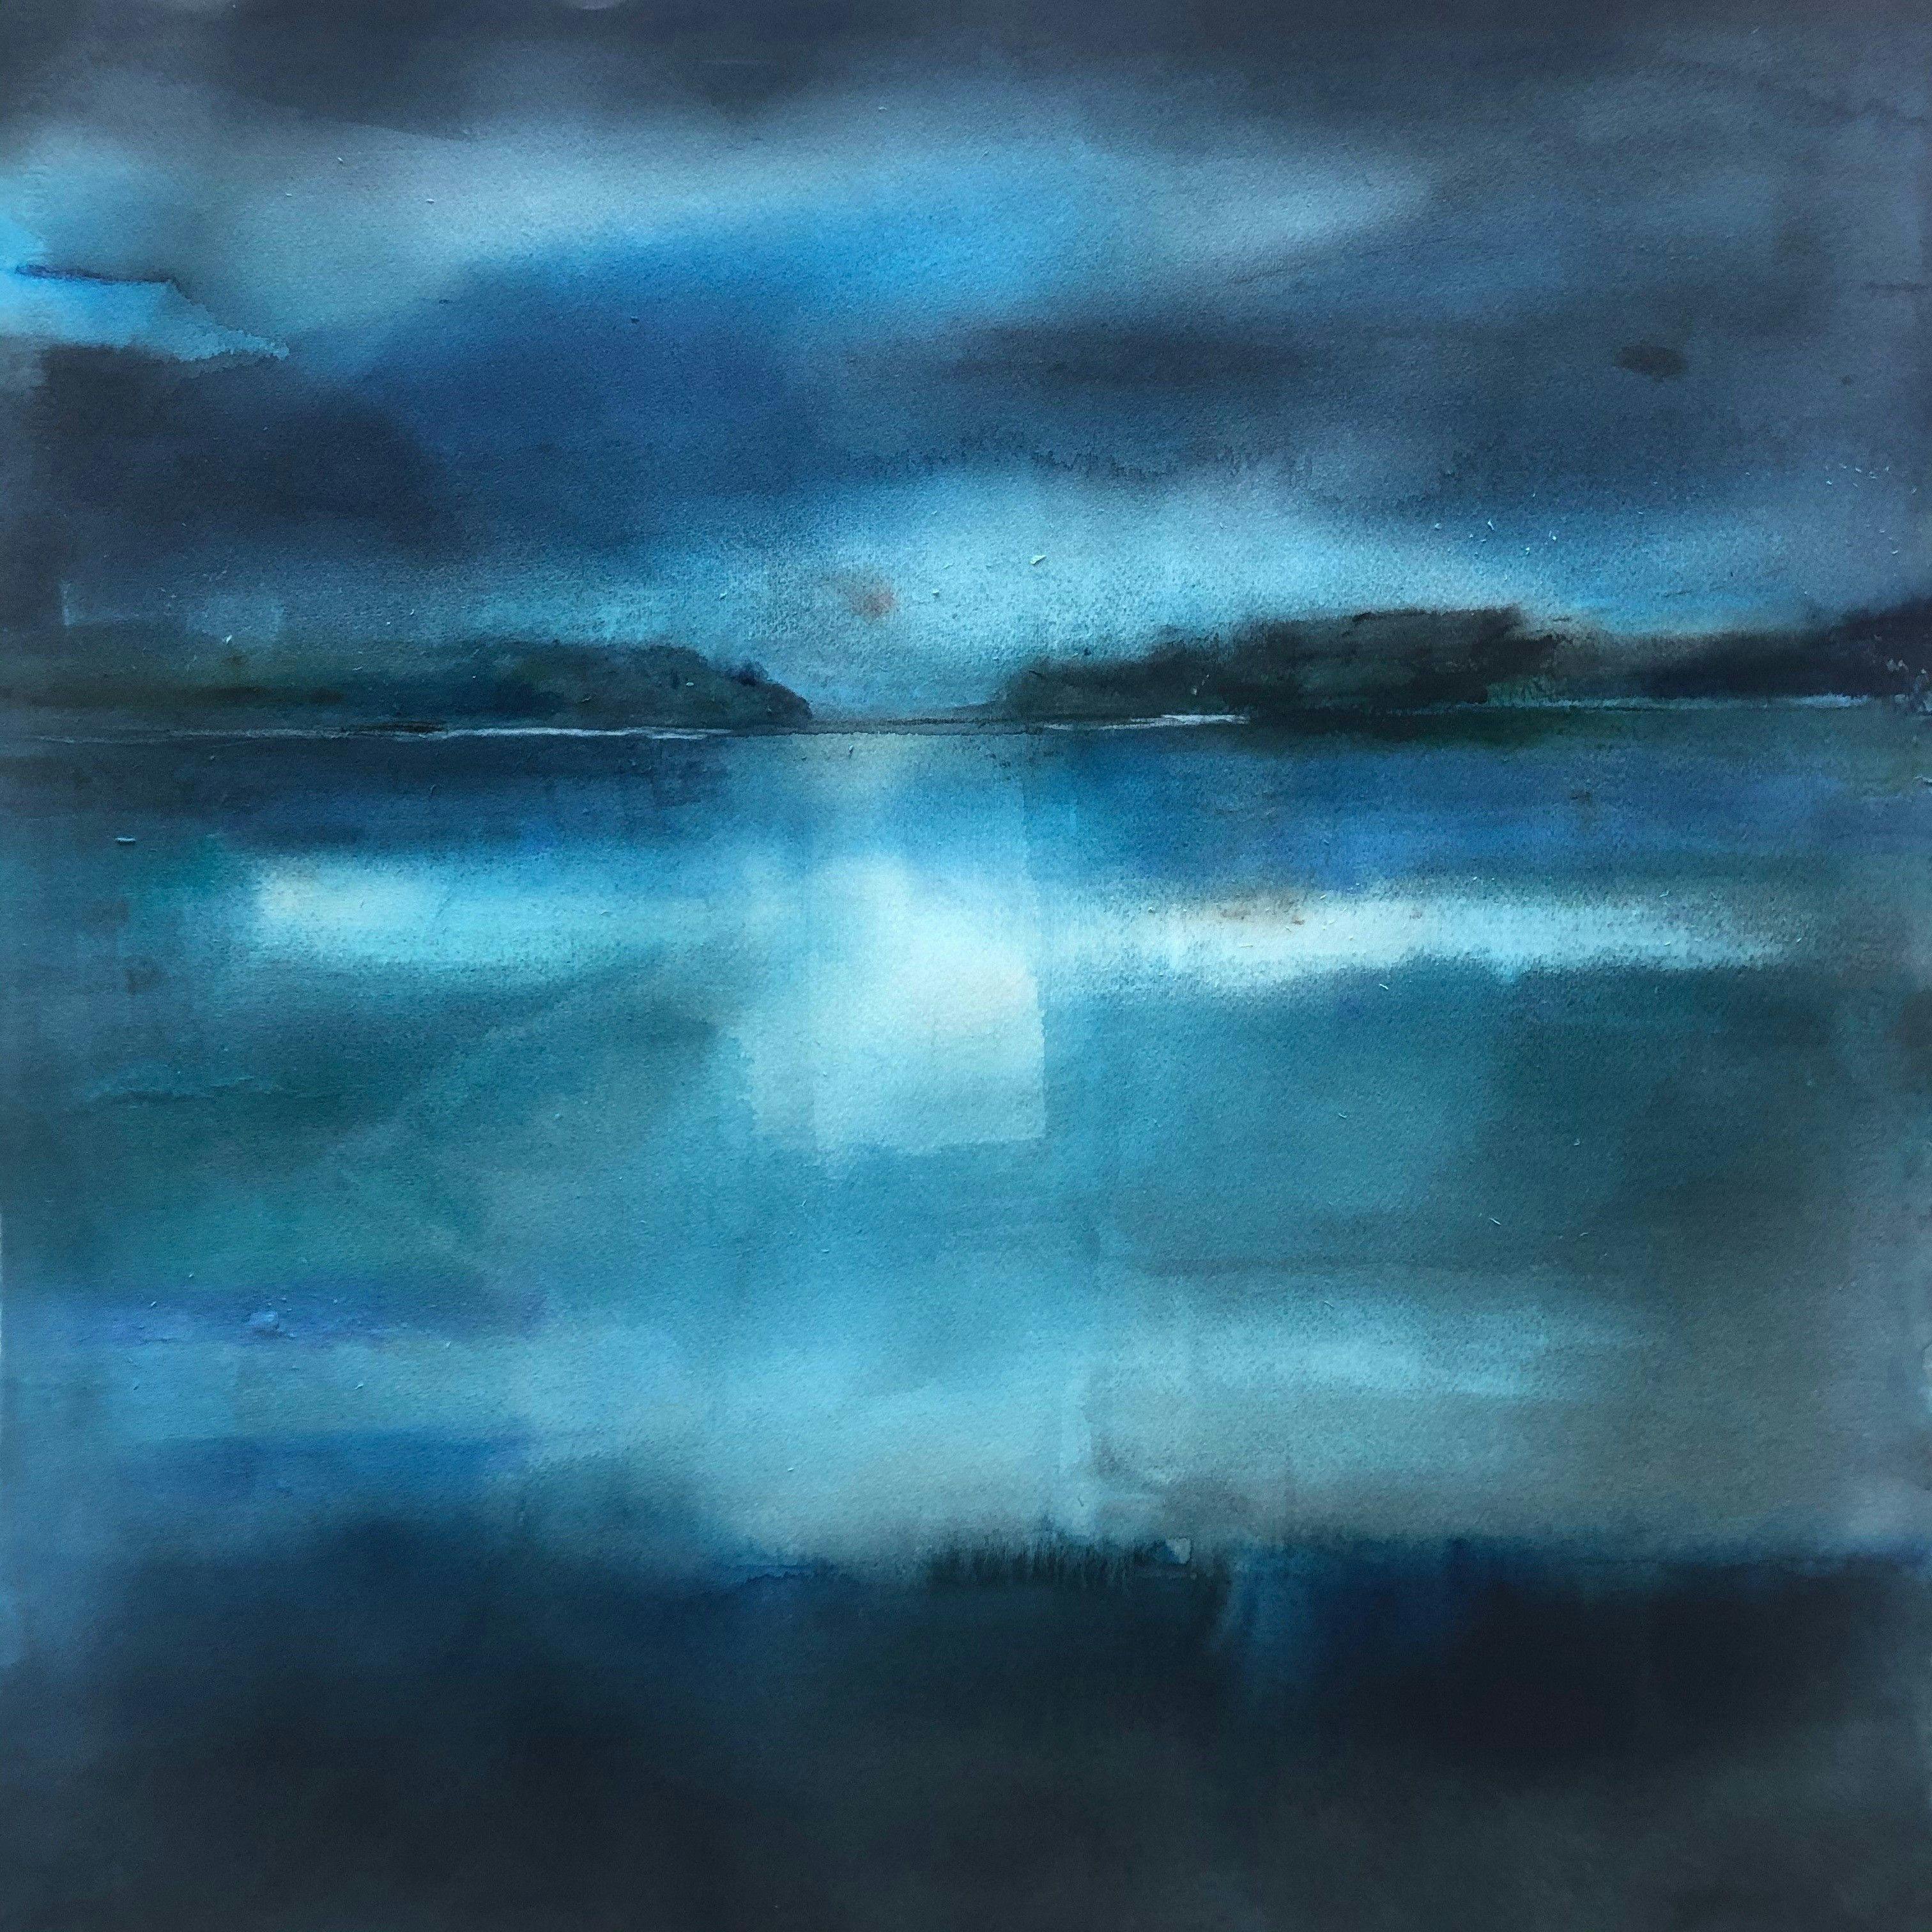 Akvarell av Ulla Ohlson, med titeln Aftonland. En abstrakt målning av en havsvy med land i horisonten, allt tonat i blått